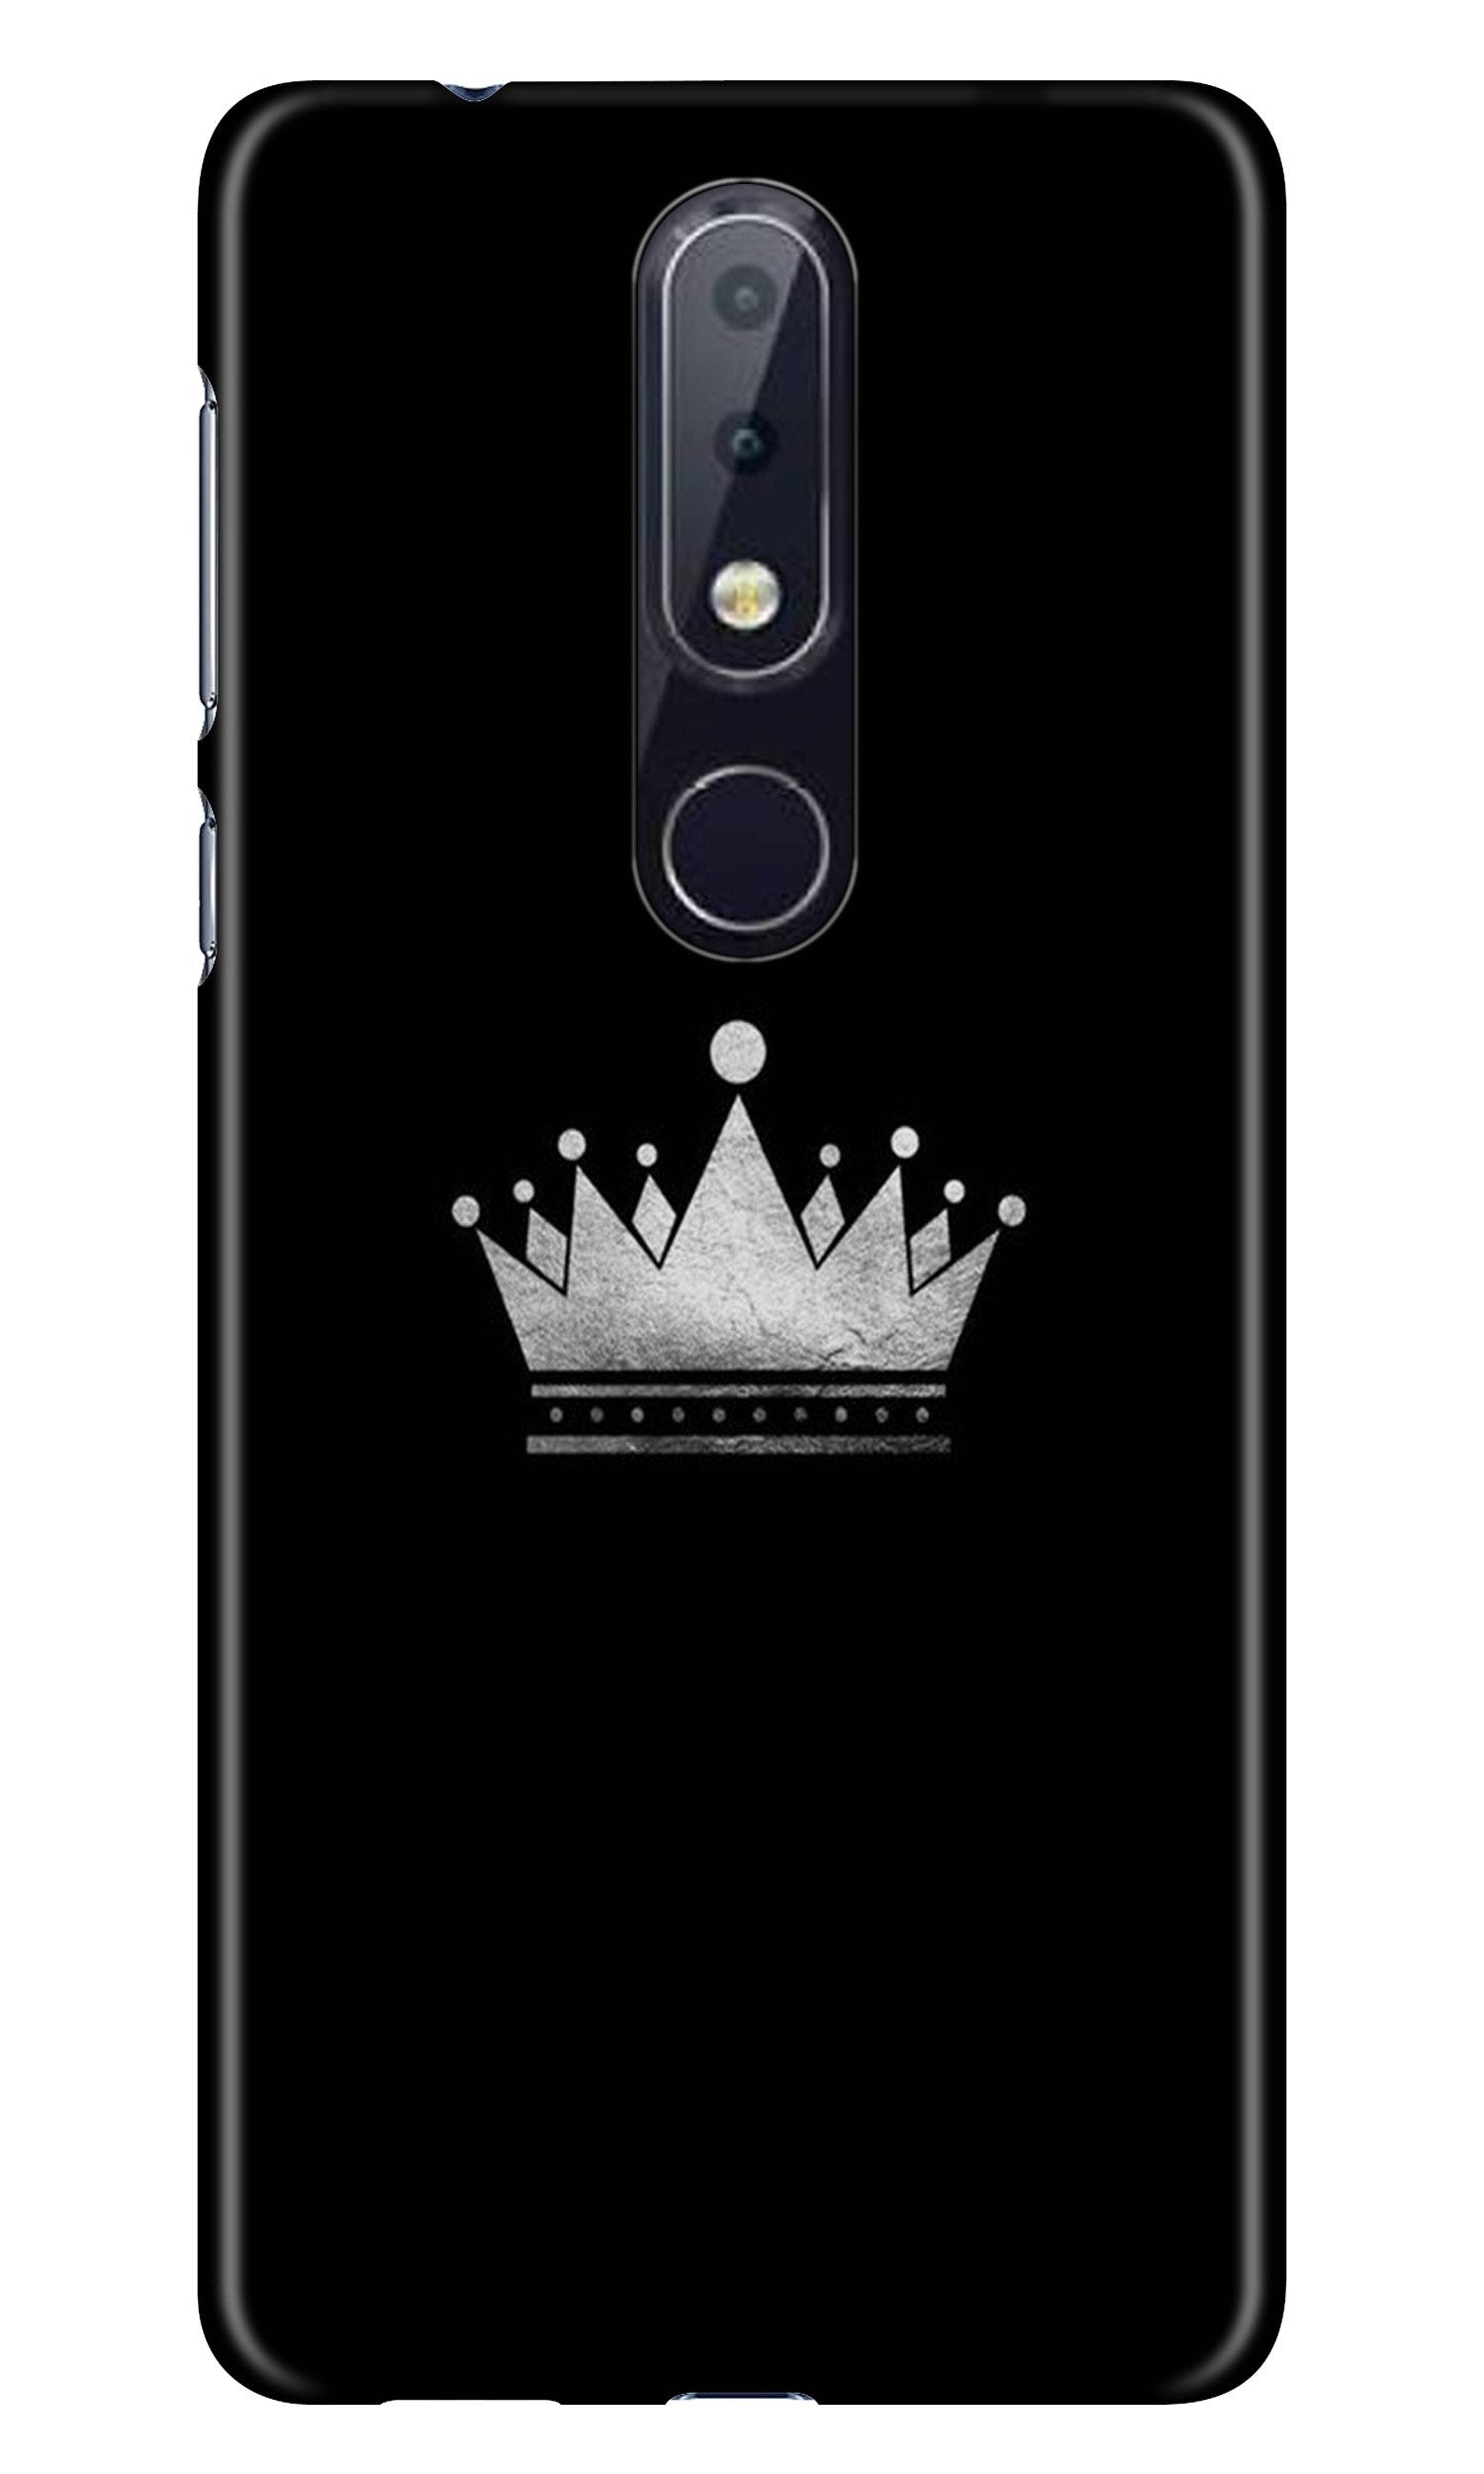 King Case for Nokia 4.2 (Design No. 280)